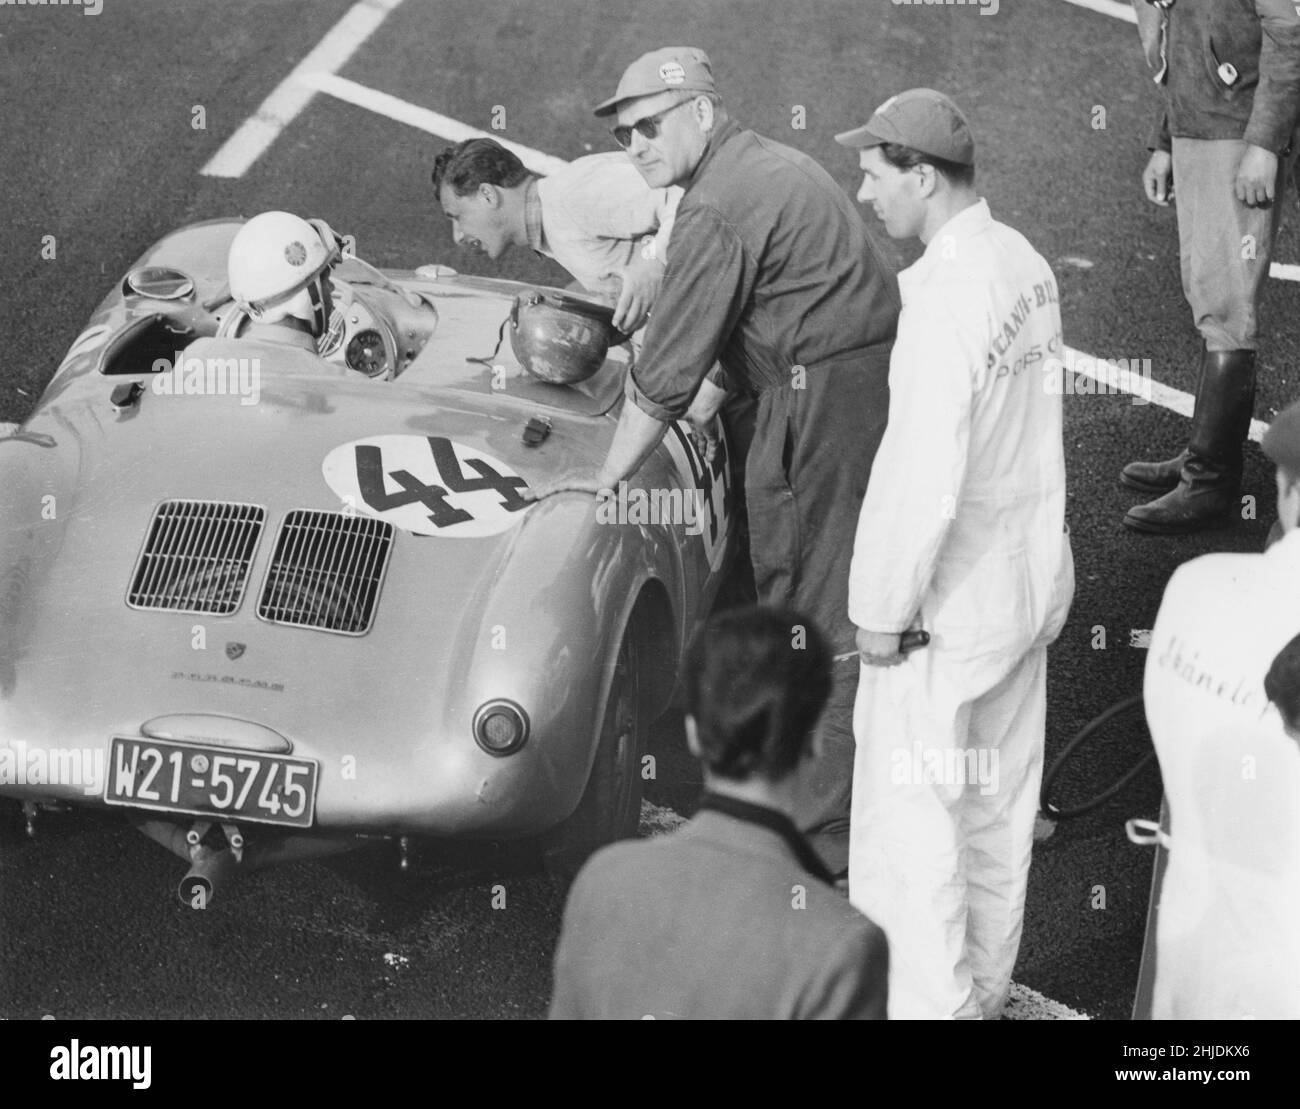 Rennwagen des 1950s. Der deutsche Rennfahrer Gert Kaiser ist in seinem Porsche 330 spyder während des großen preises von schweden in Kristianstad 1958 abgebildet. Der Mann, der sich neigt, mit ihm zu sprechen, ist Hans Herrmann, ebenfalls ein berühmter Rennfahrer. Stockfoto